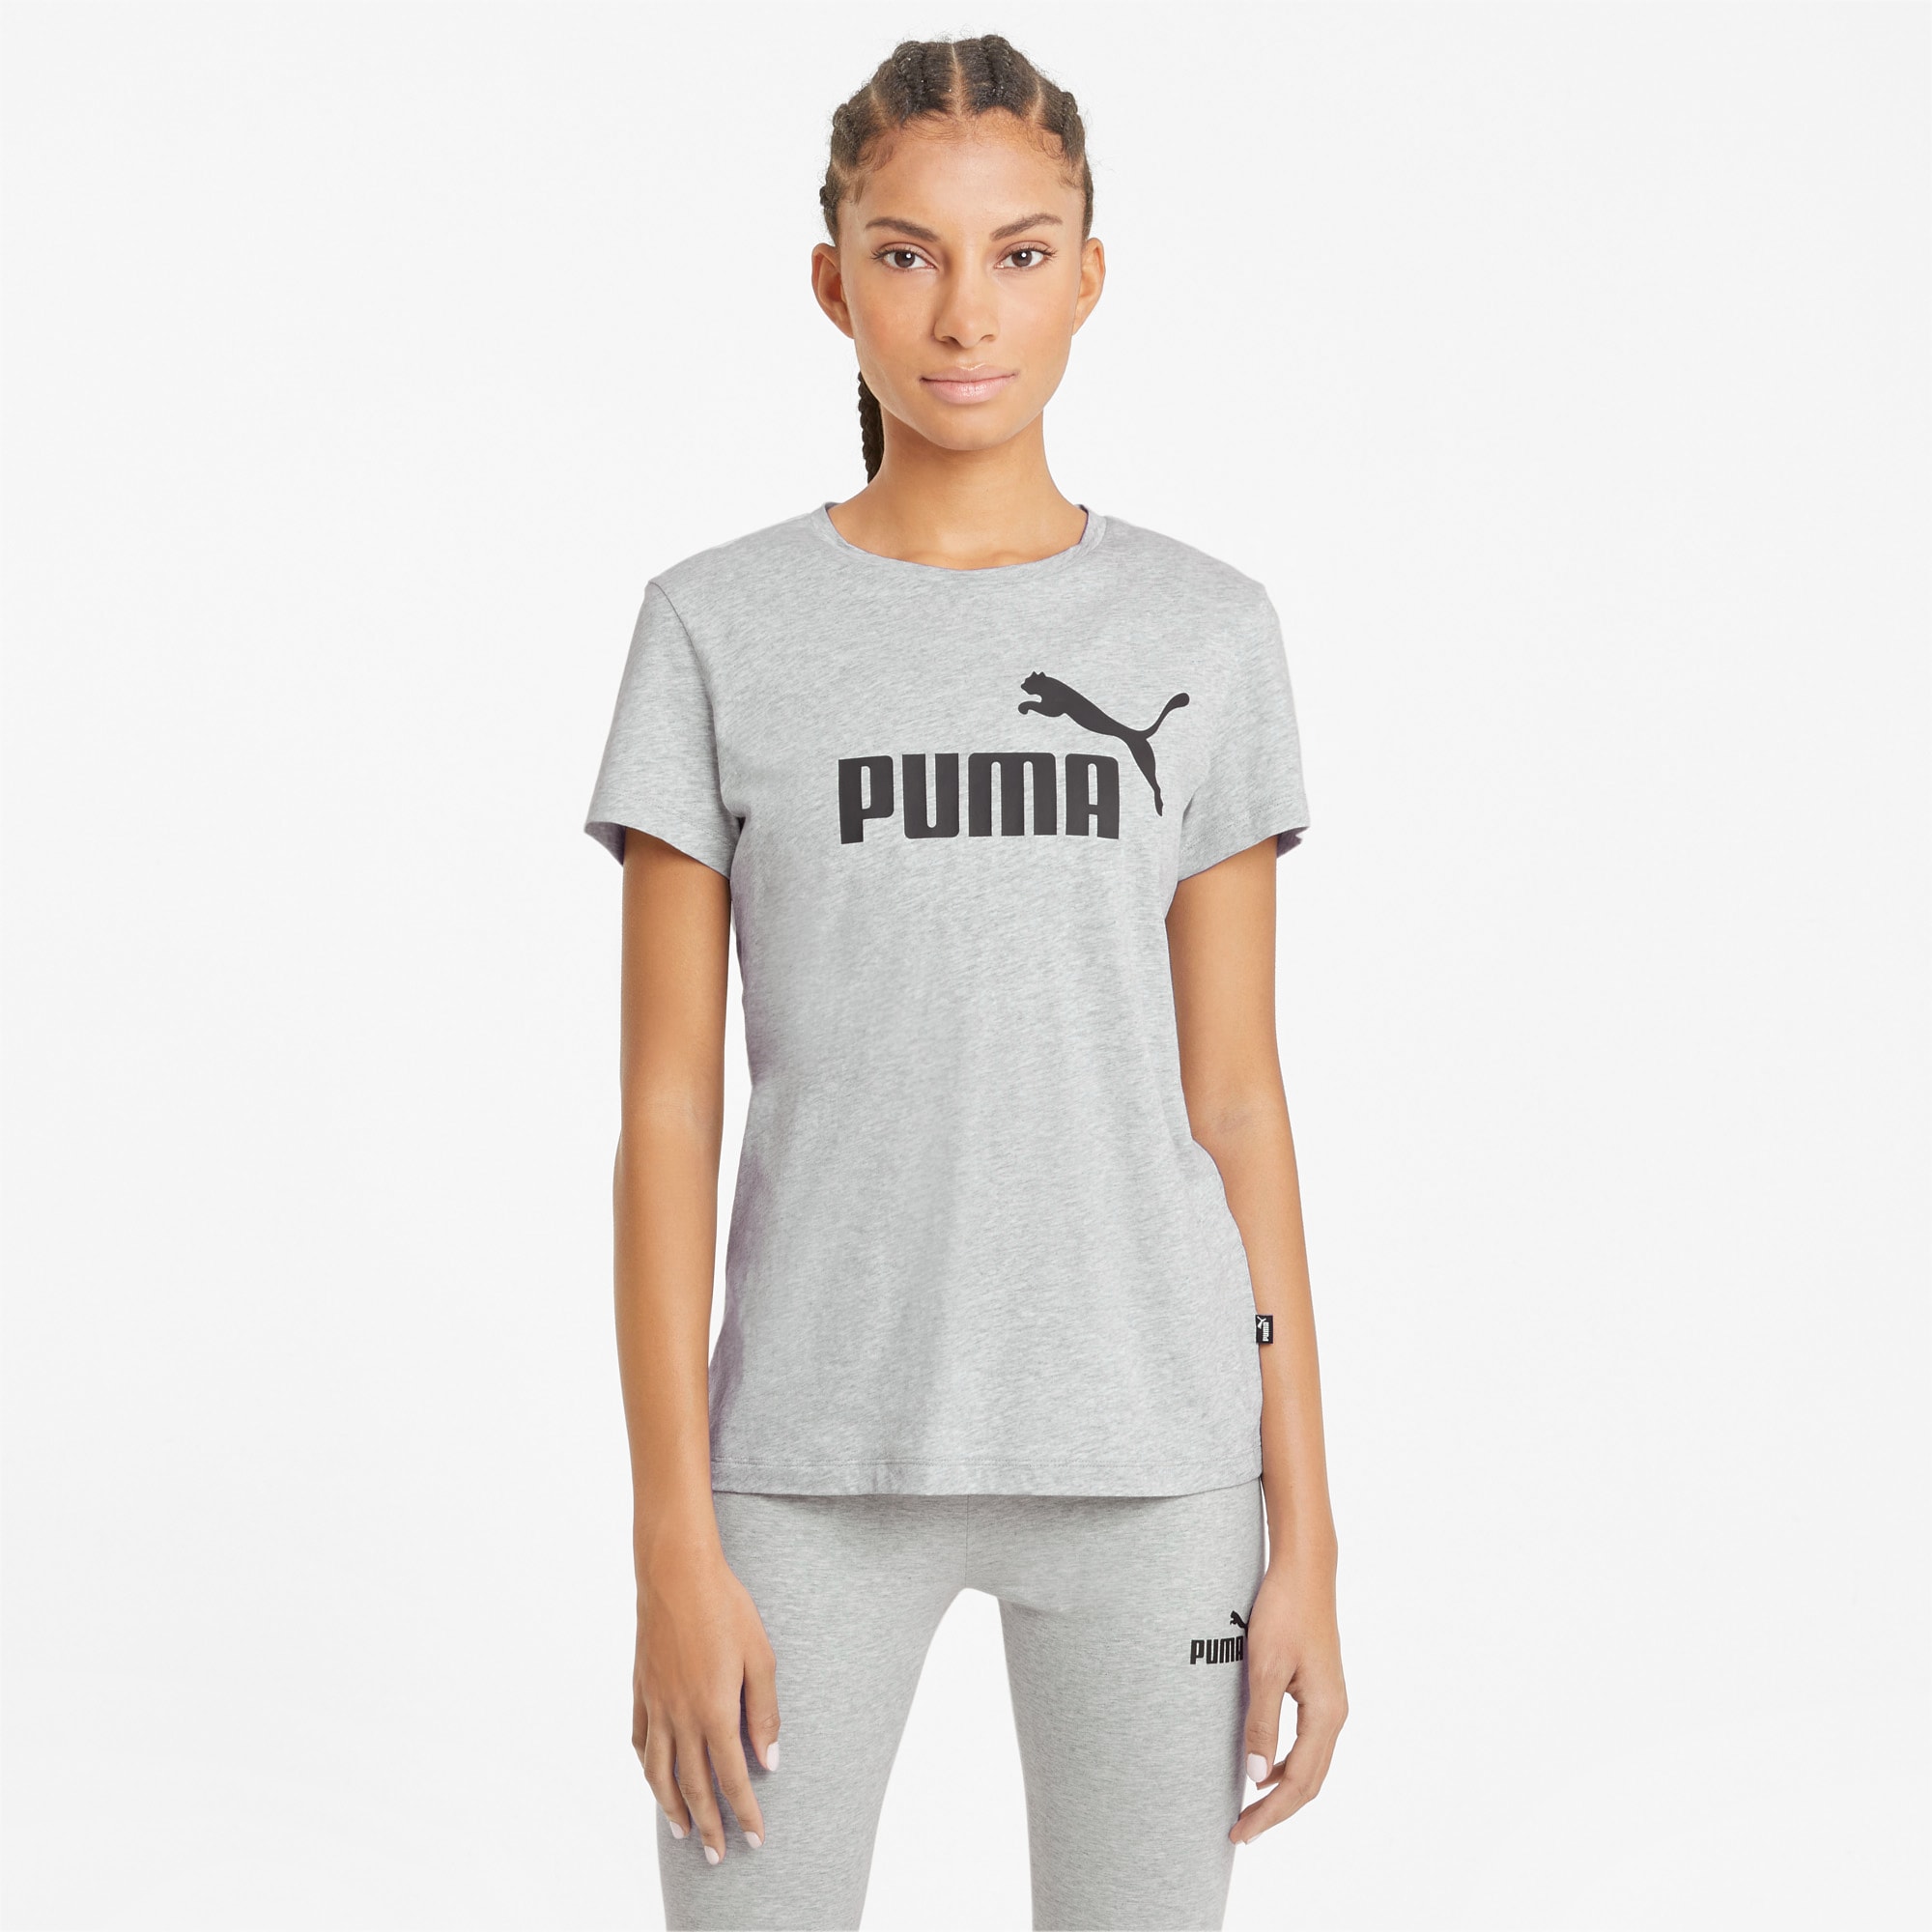 PUMA Essentials Logo Damen T-Shirt Mit Heide Grau Größe S ab CHF 25.00 online kaufen